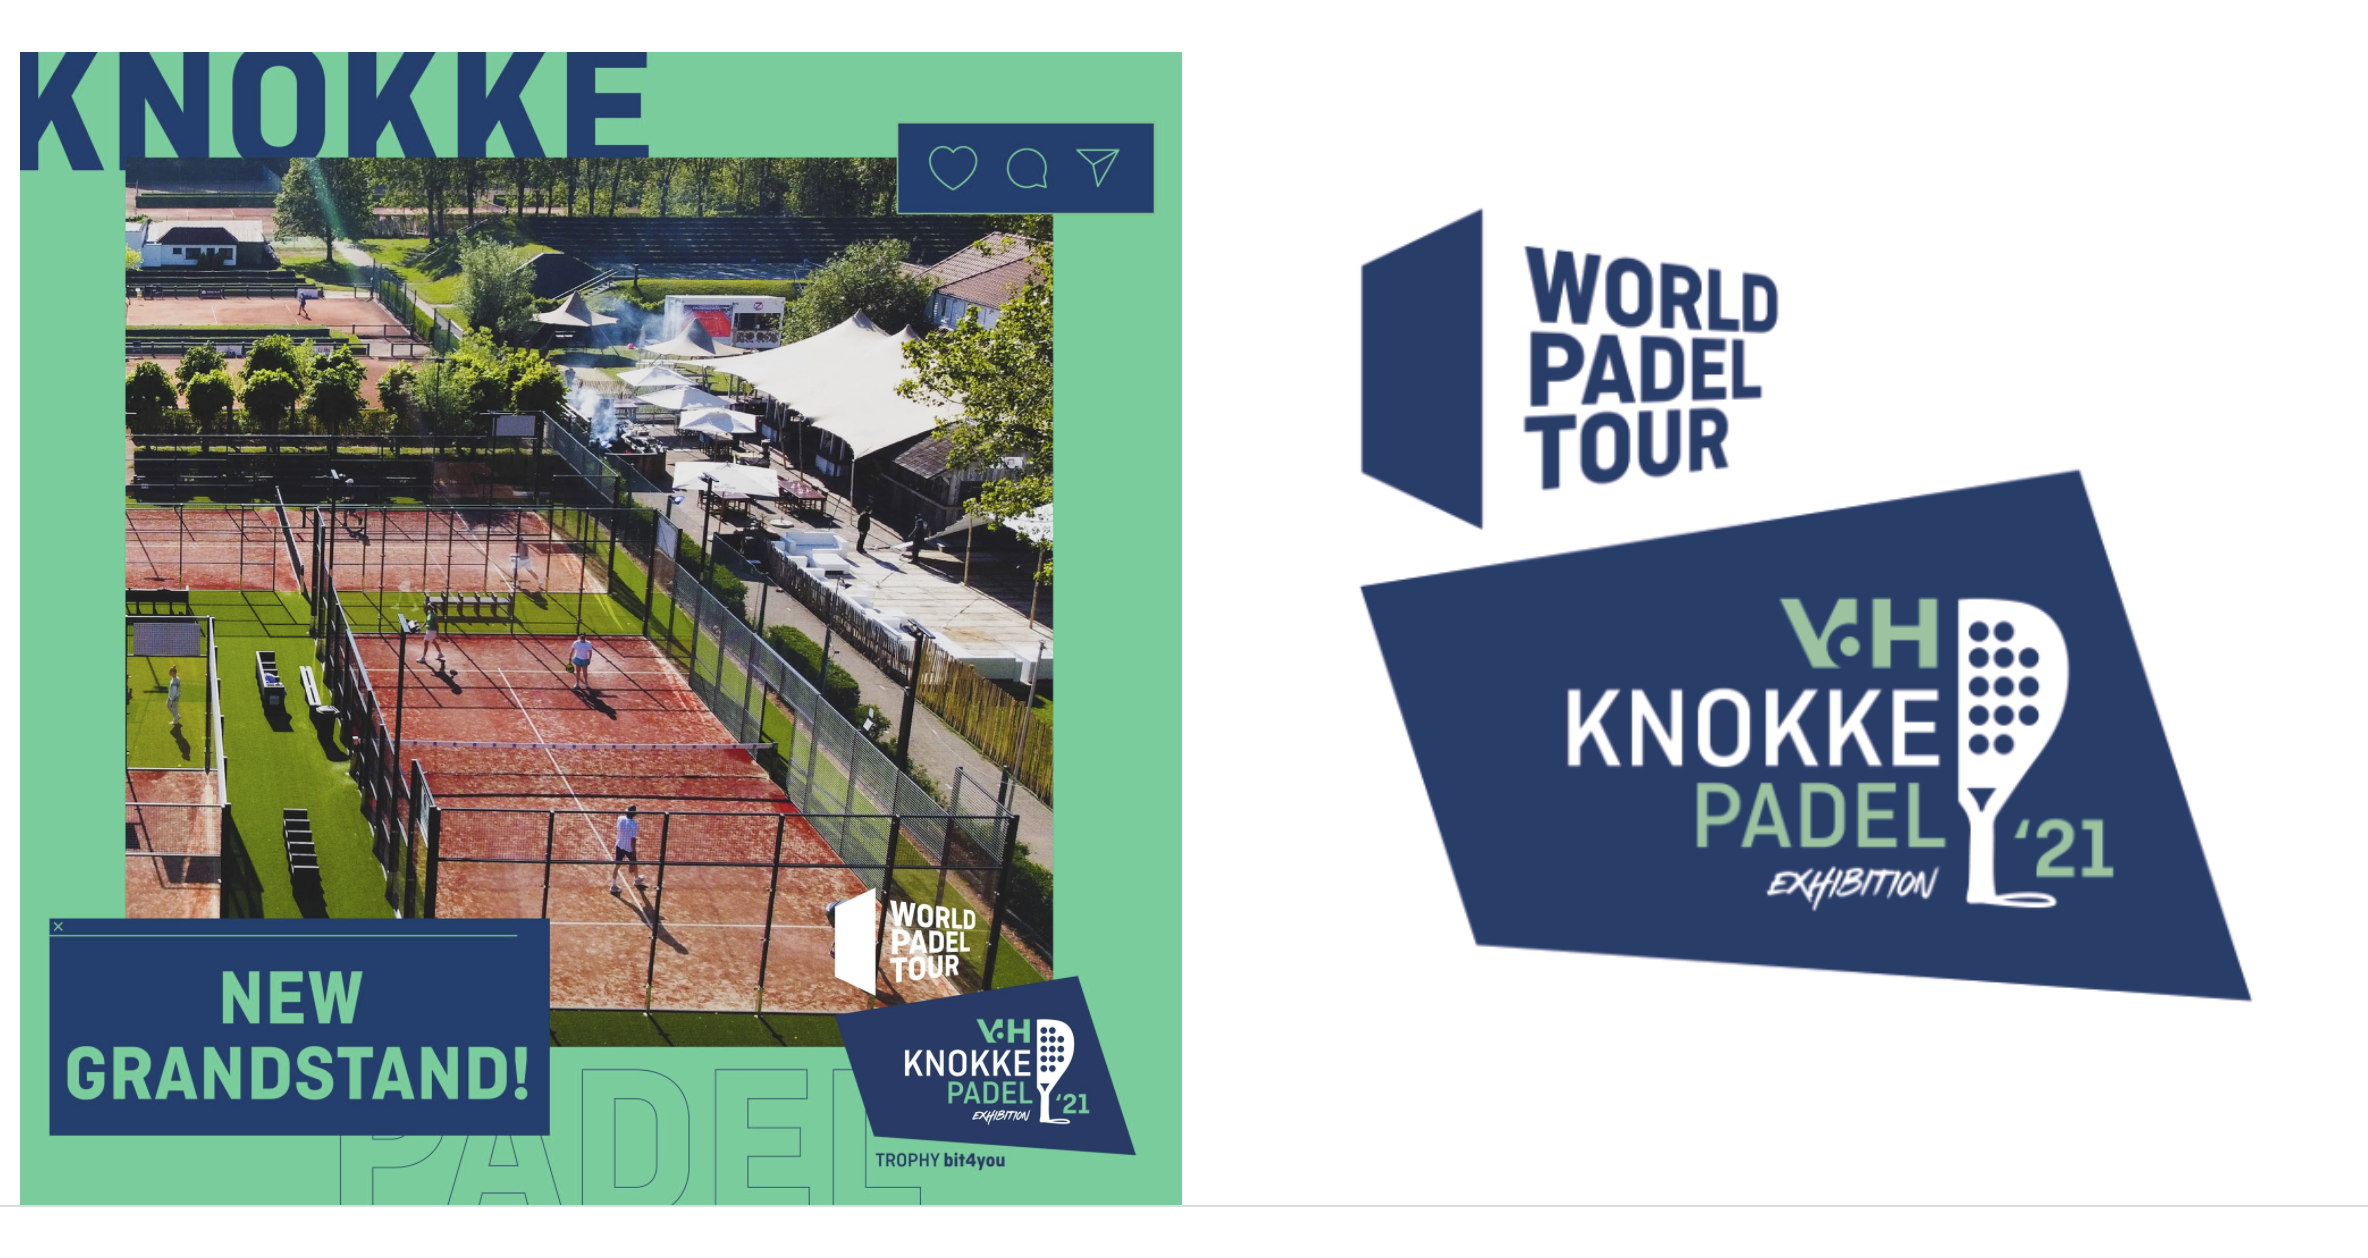 World Padel Tour Knokke 2021: està passant!